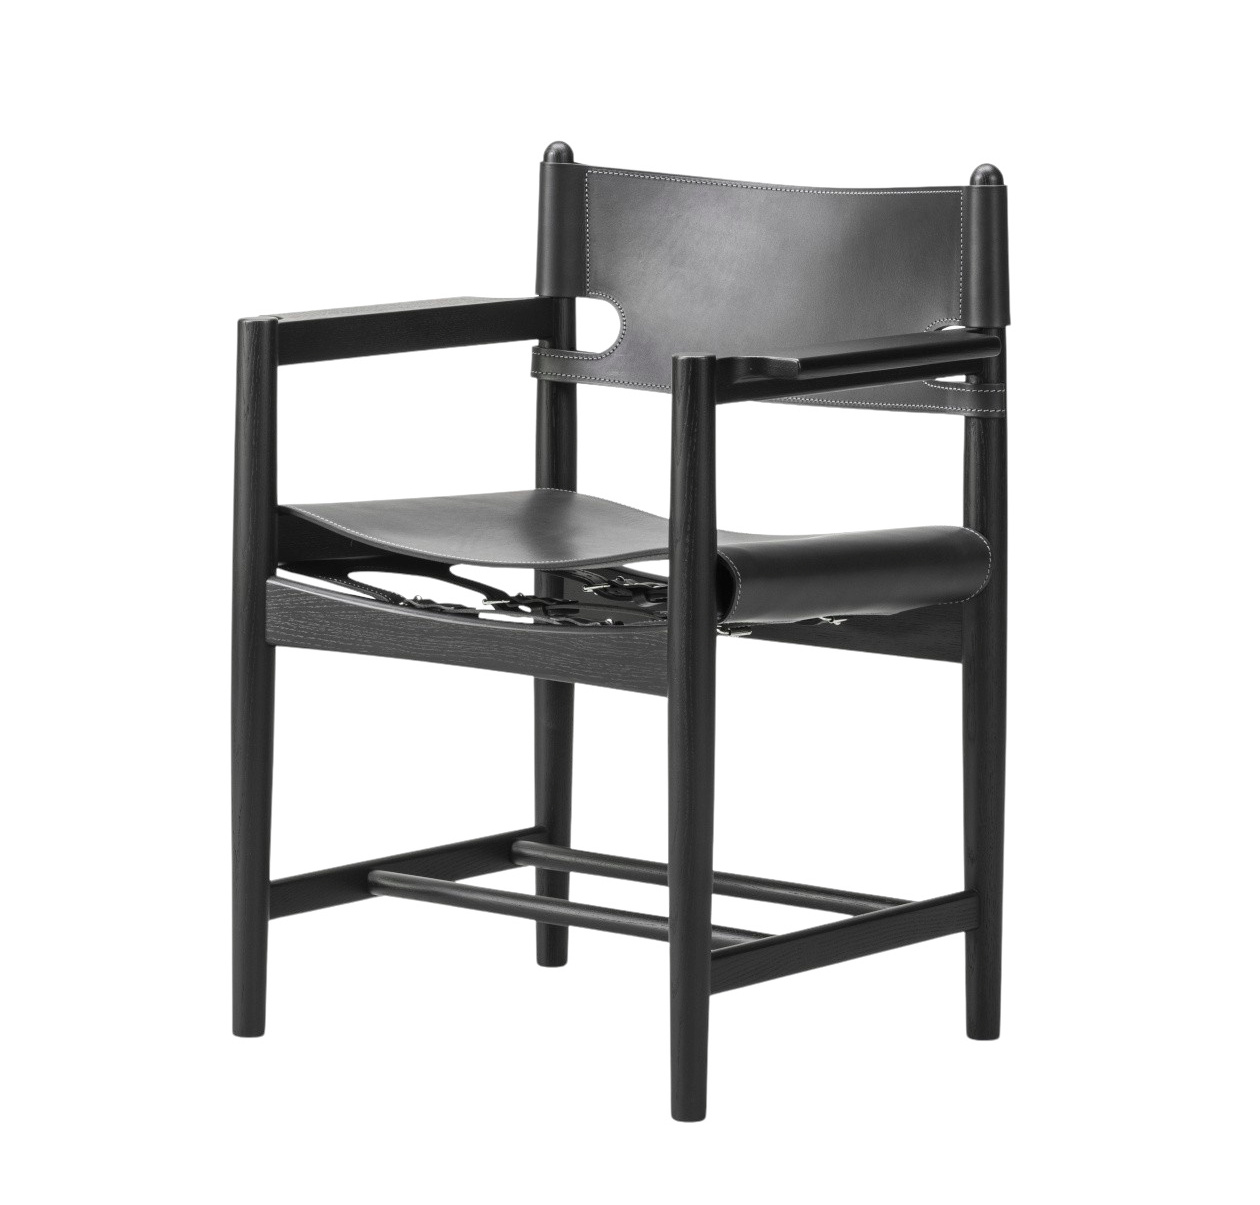 The Spanish Dining Chair mit Armlehnen, eiche schwarz lackiert / leder schwarz